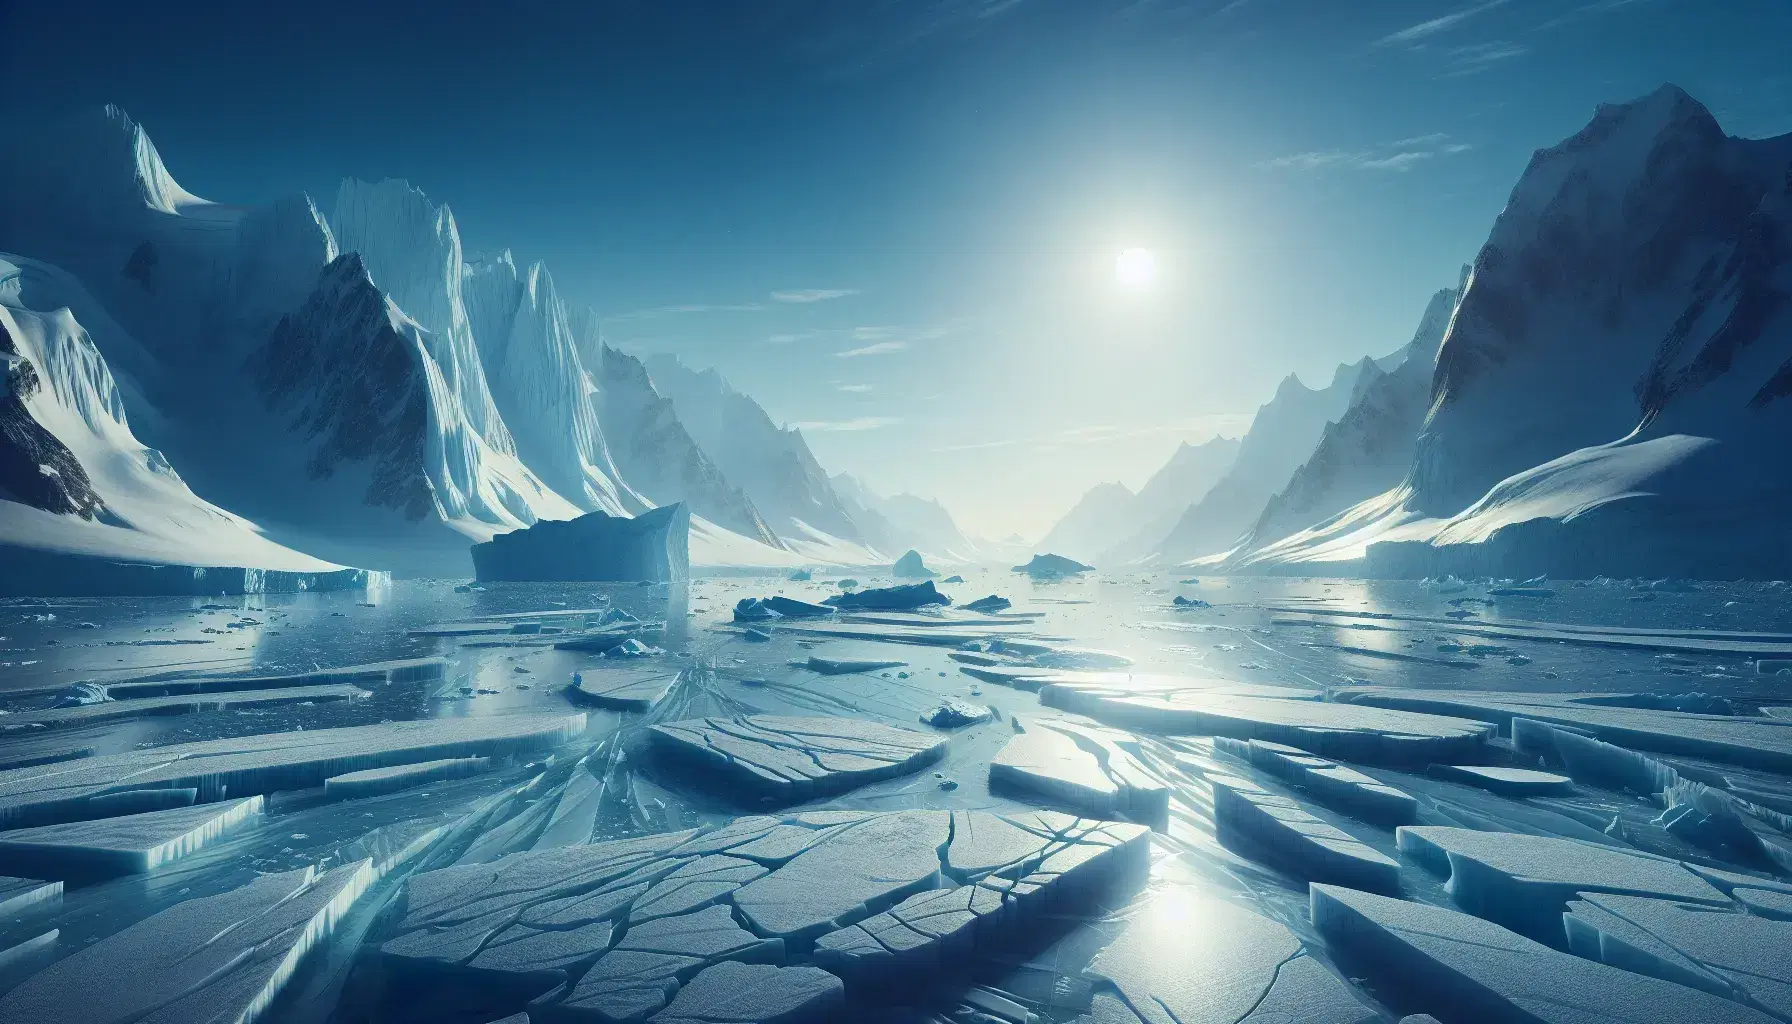 Formazione glaciale con crepacci e iceberg isolato su acque calme, montagne innevate sullo sfondo e cielo quasi sgombro.